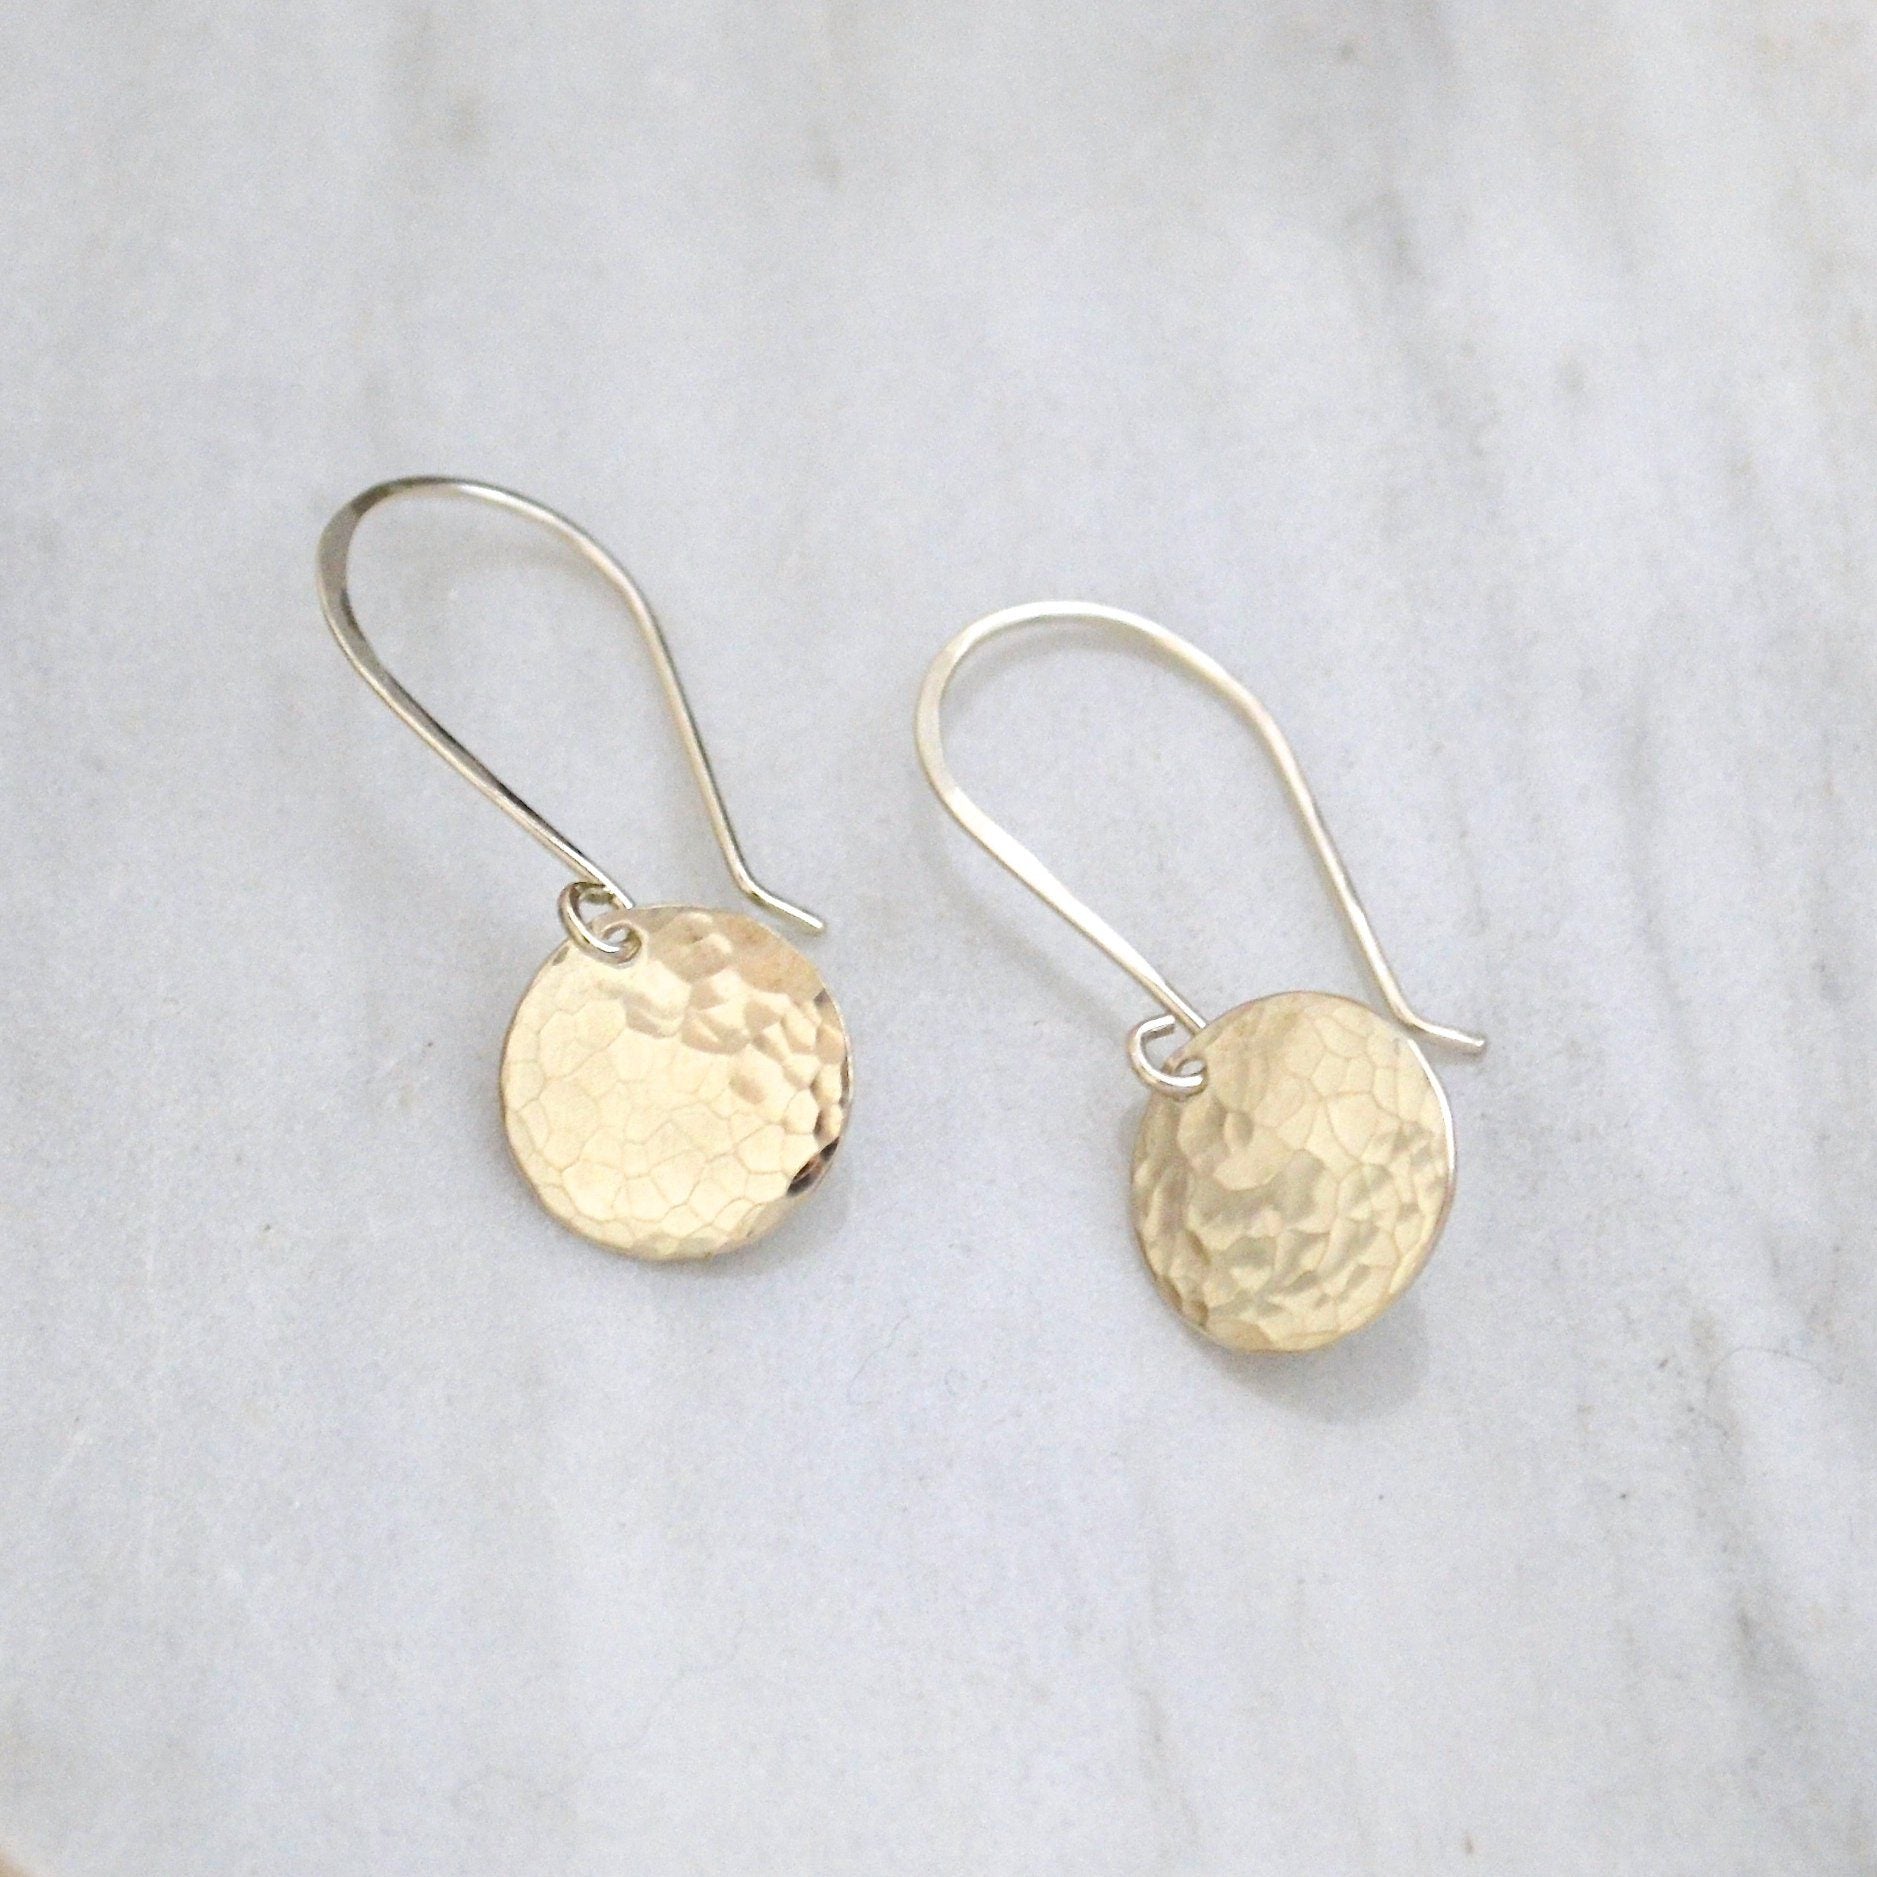 Speckle Earrings - minimalist dappled disc earrings in gold or silver - Foamy Wader